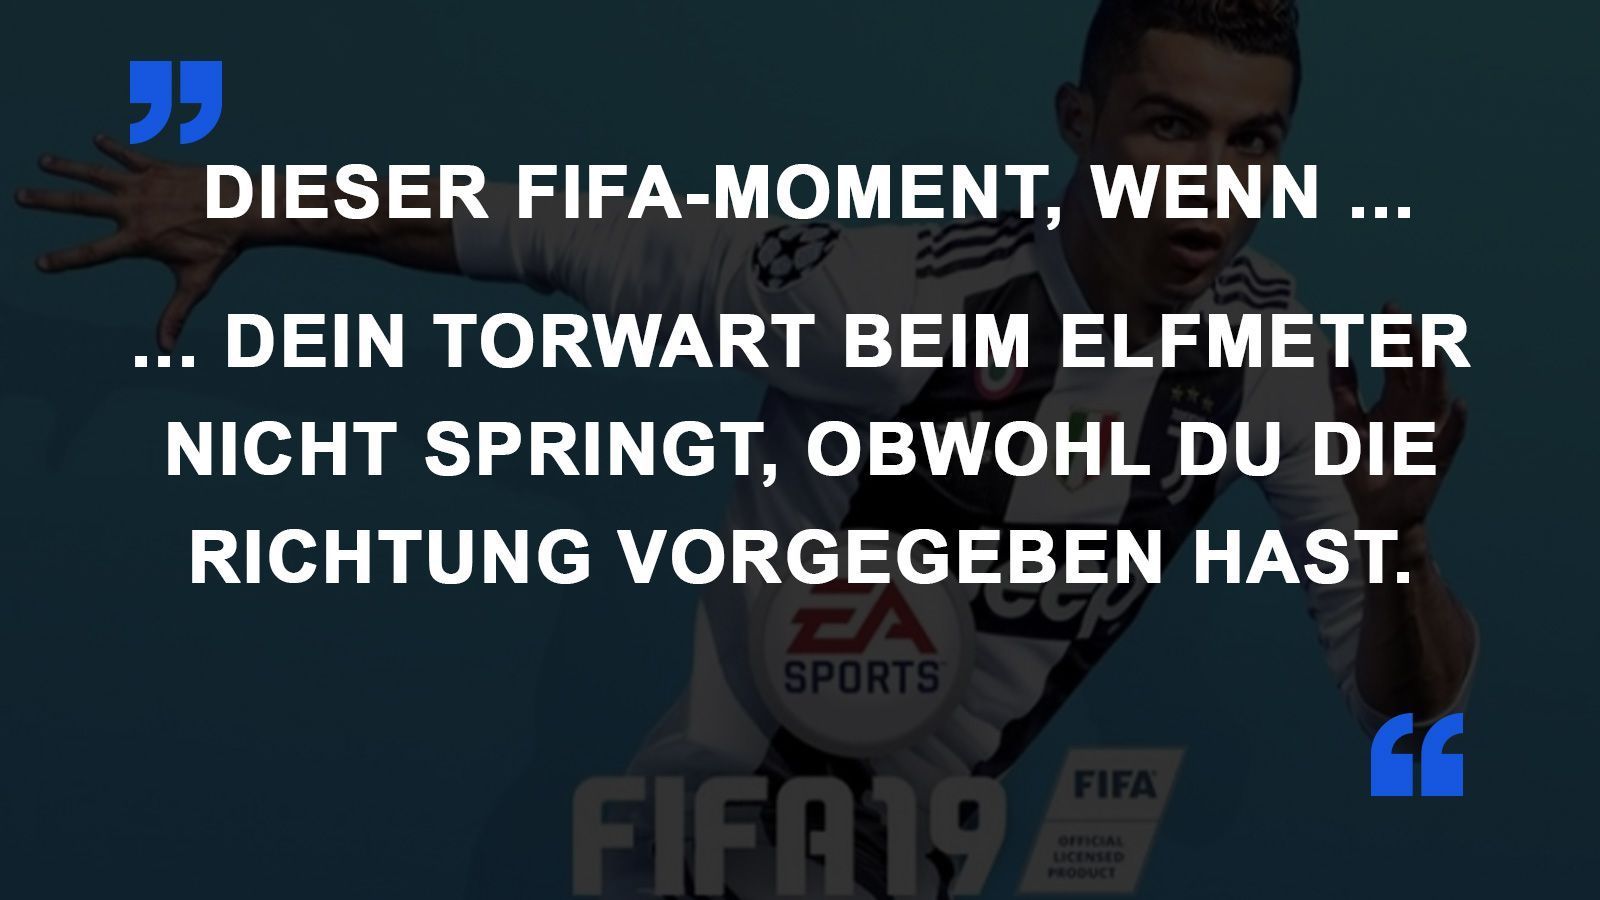 
                <strong>FIFA Momente Torwart springt nicht</strong><br>
                
              